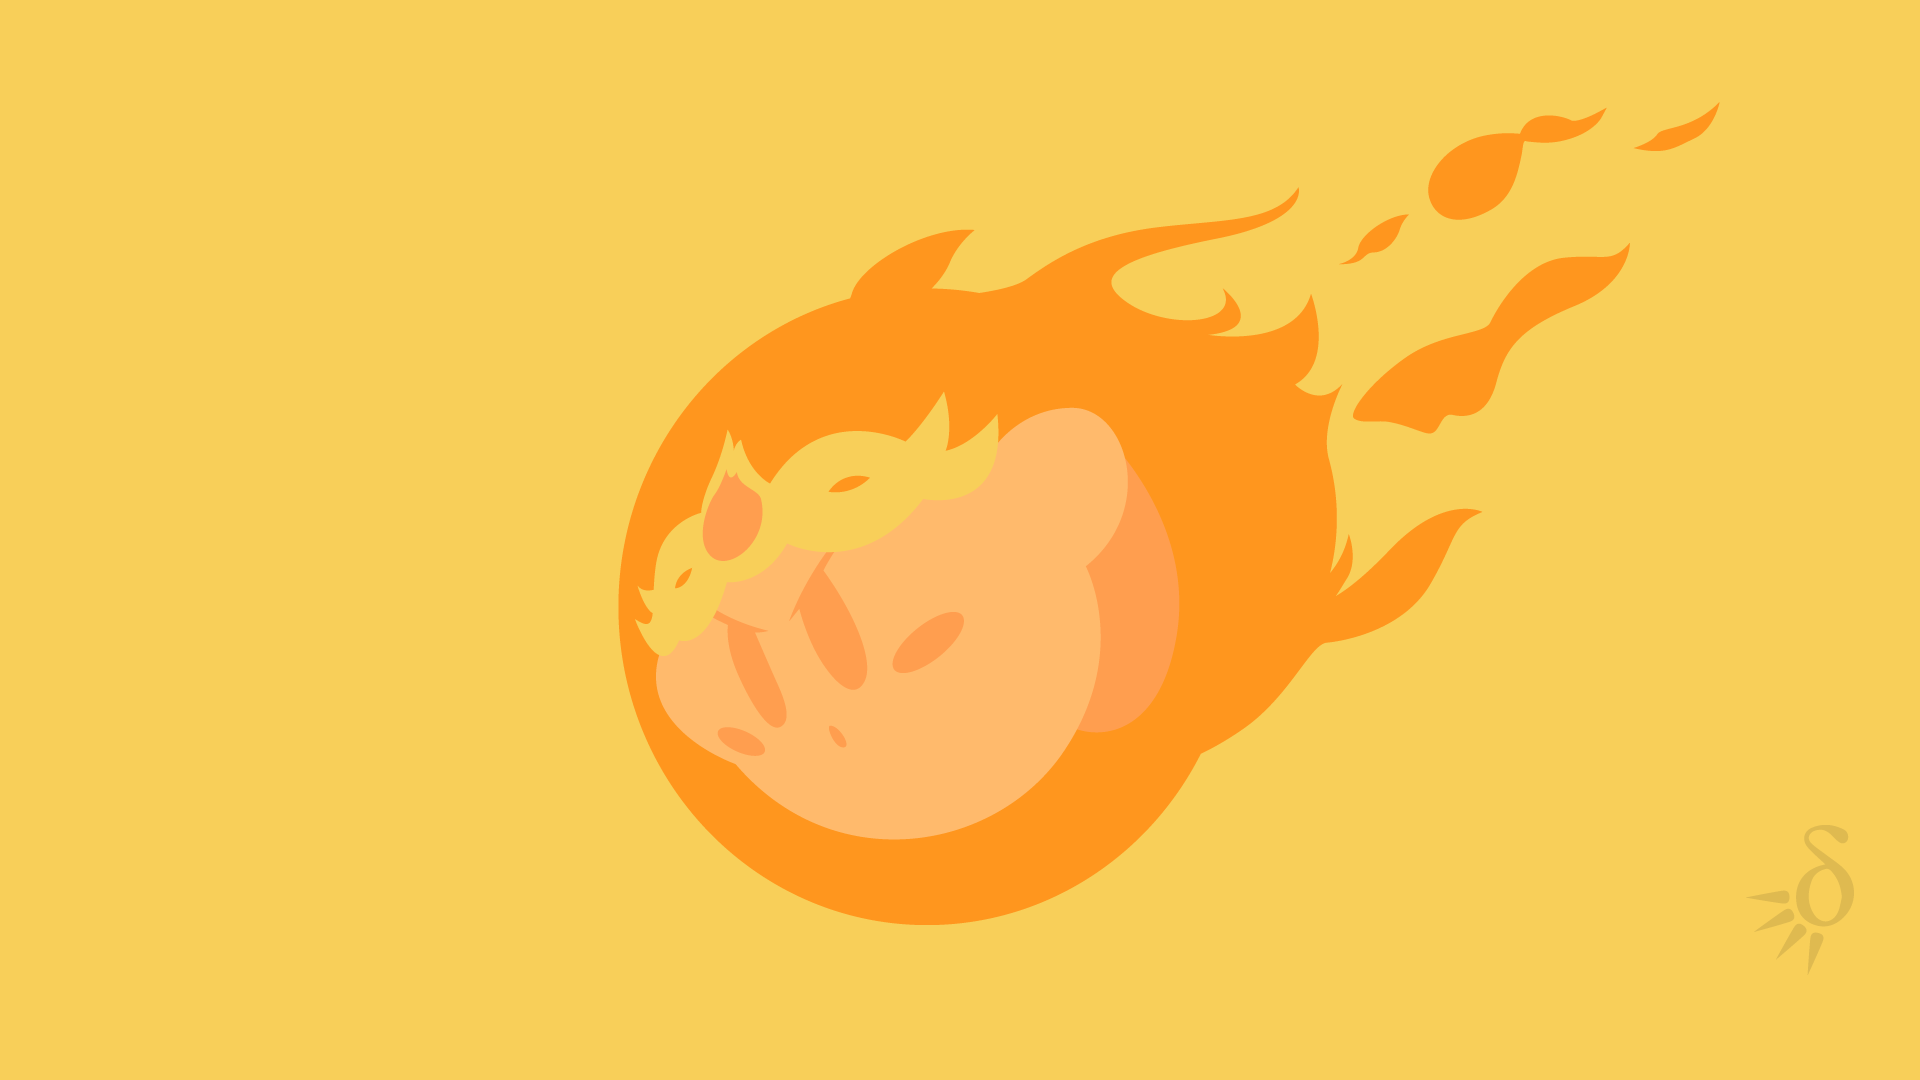 Burning Kirby